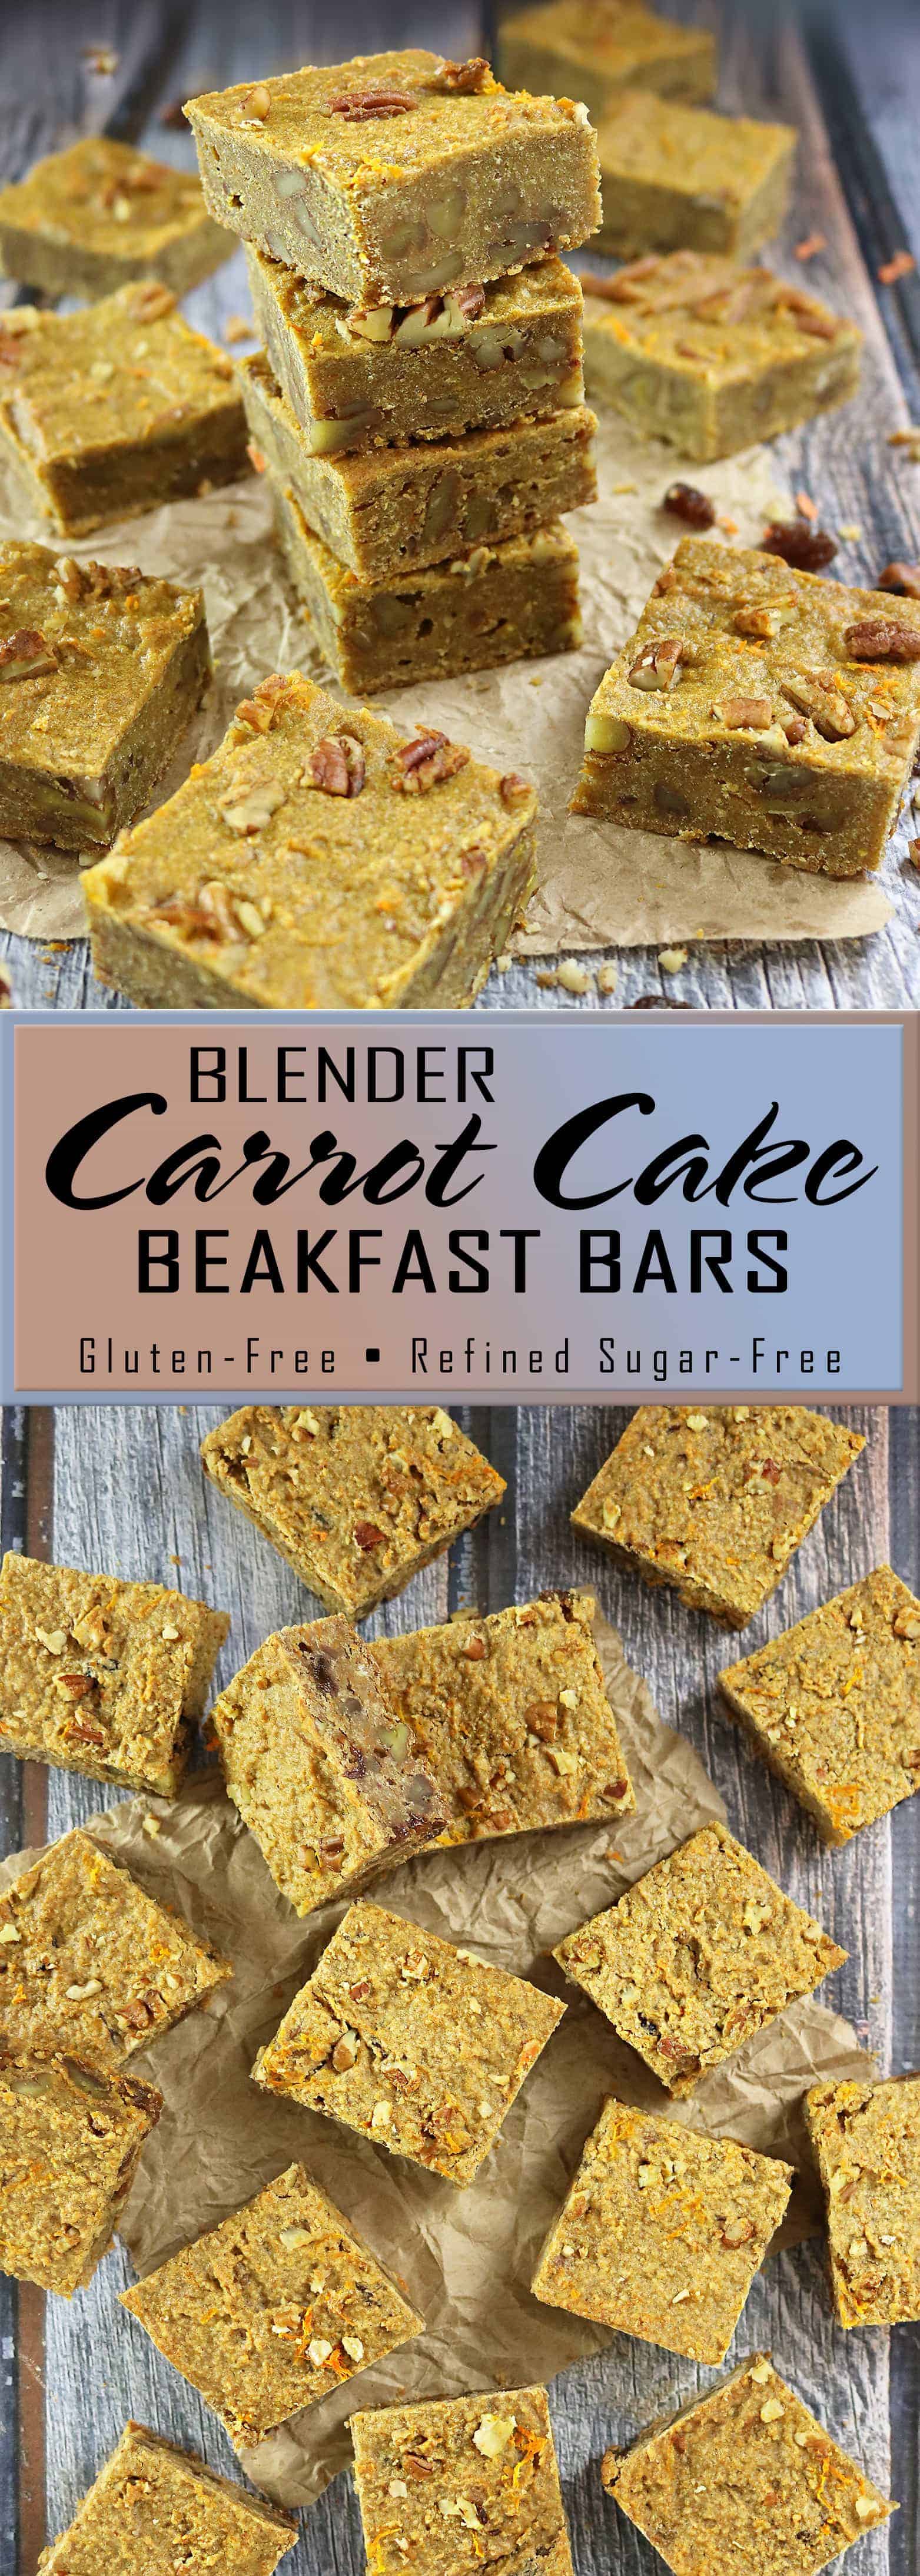 Blender Carrot Cake Breakfast Bars